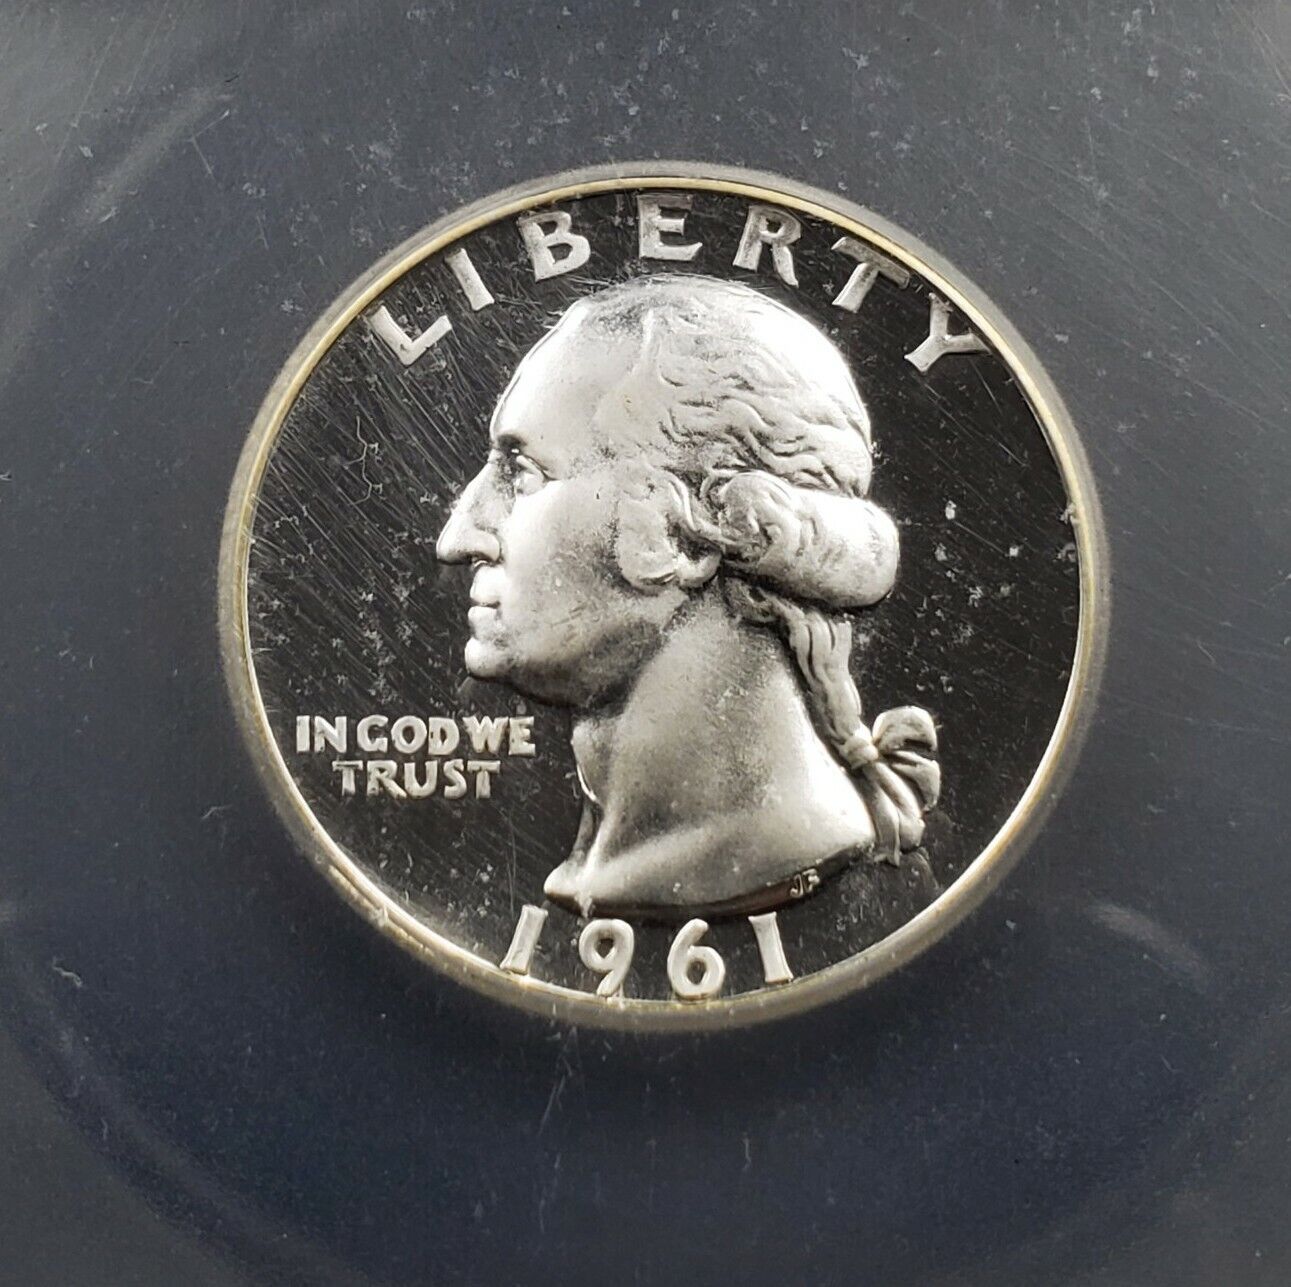 1961 P Washington Silver Quarter Coin ICG PR69 Cam Cameo Proof Gem No Toning 25c